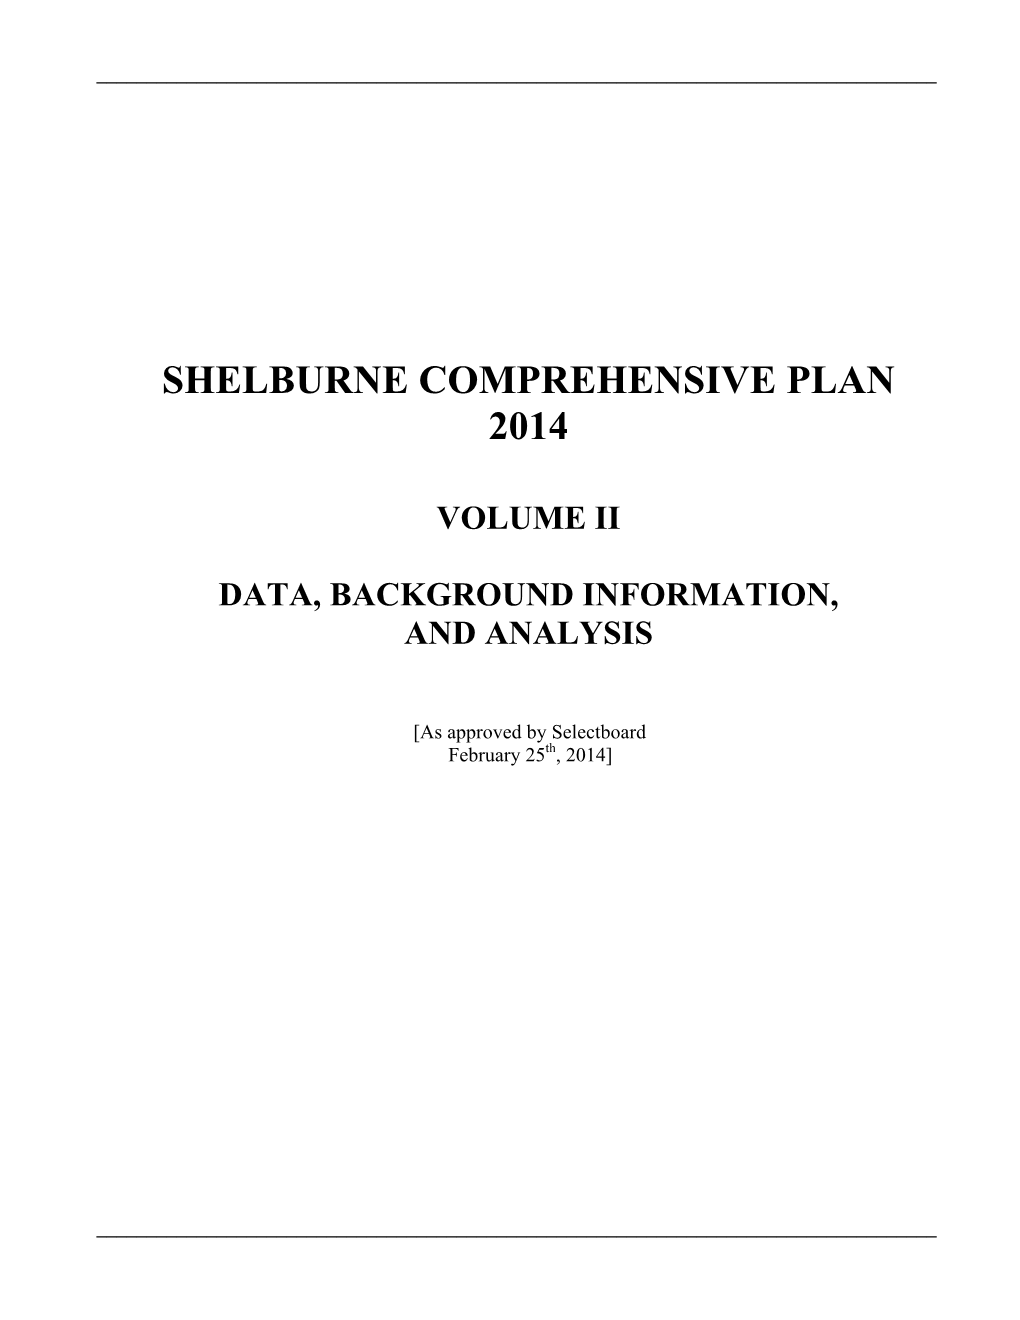 Shelburne Comprehensive Plan 2014